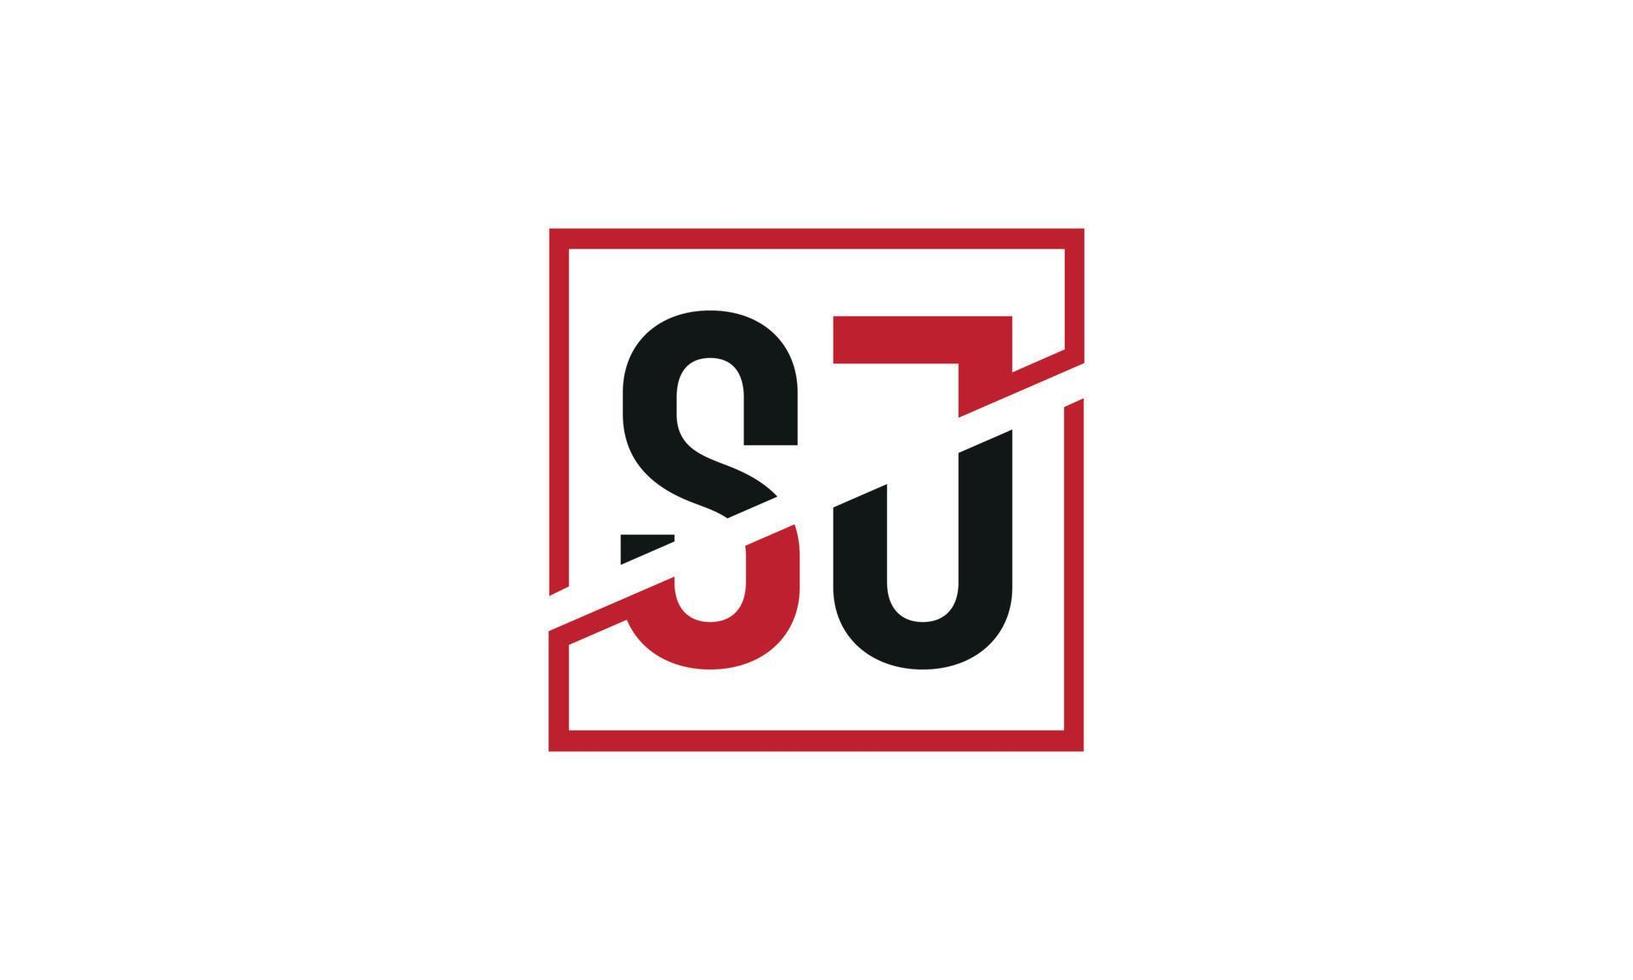 lettre sj logo pro fichier vectoriel vecteur pro